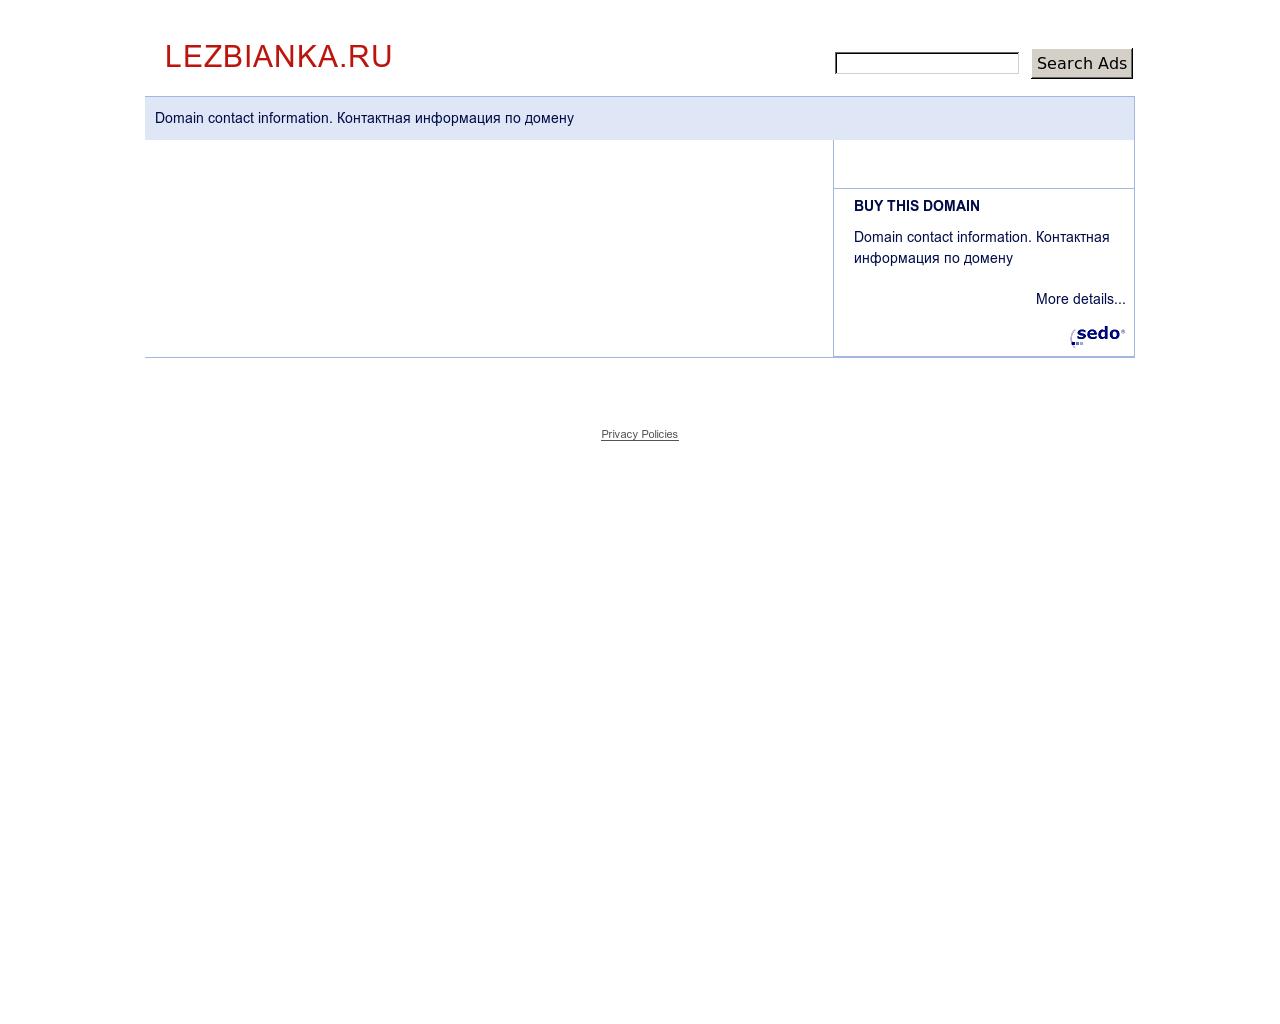 Изображение сайта lezbianka.ru в разрешении 1280x1024